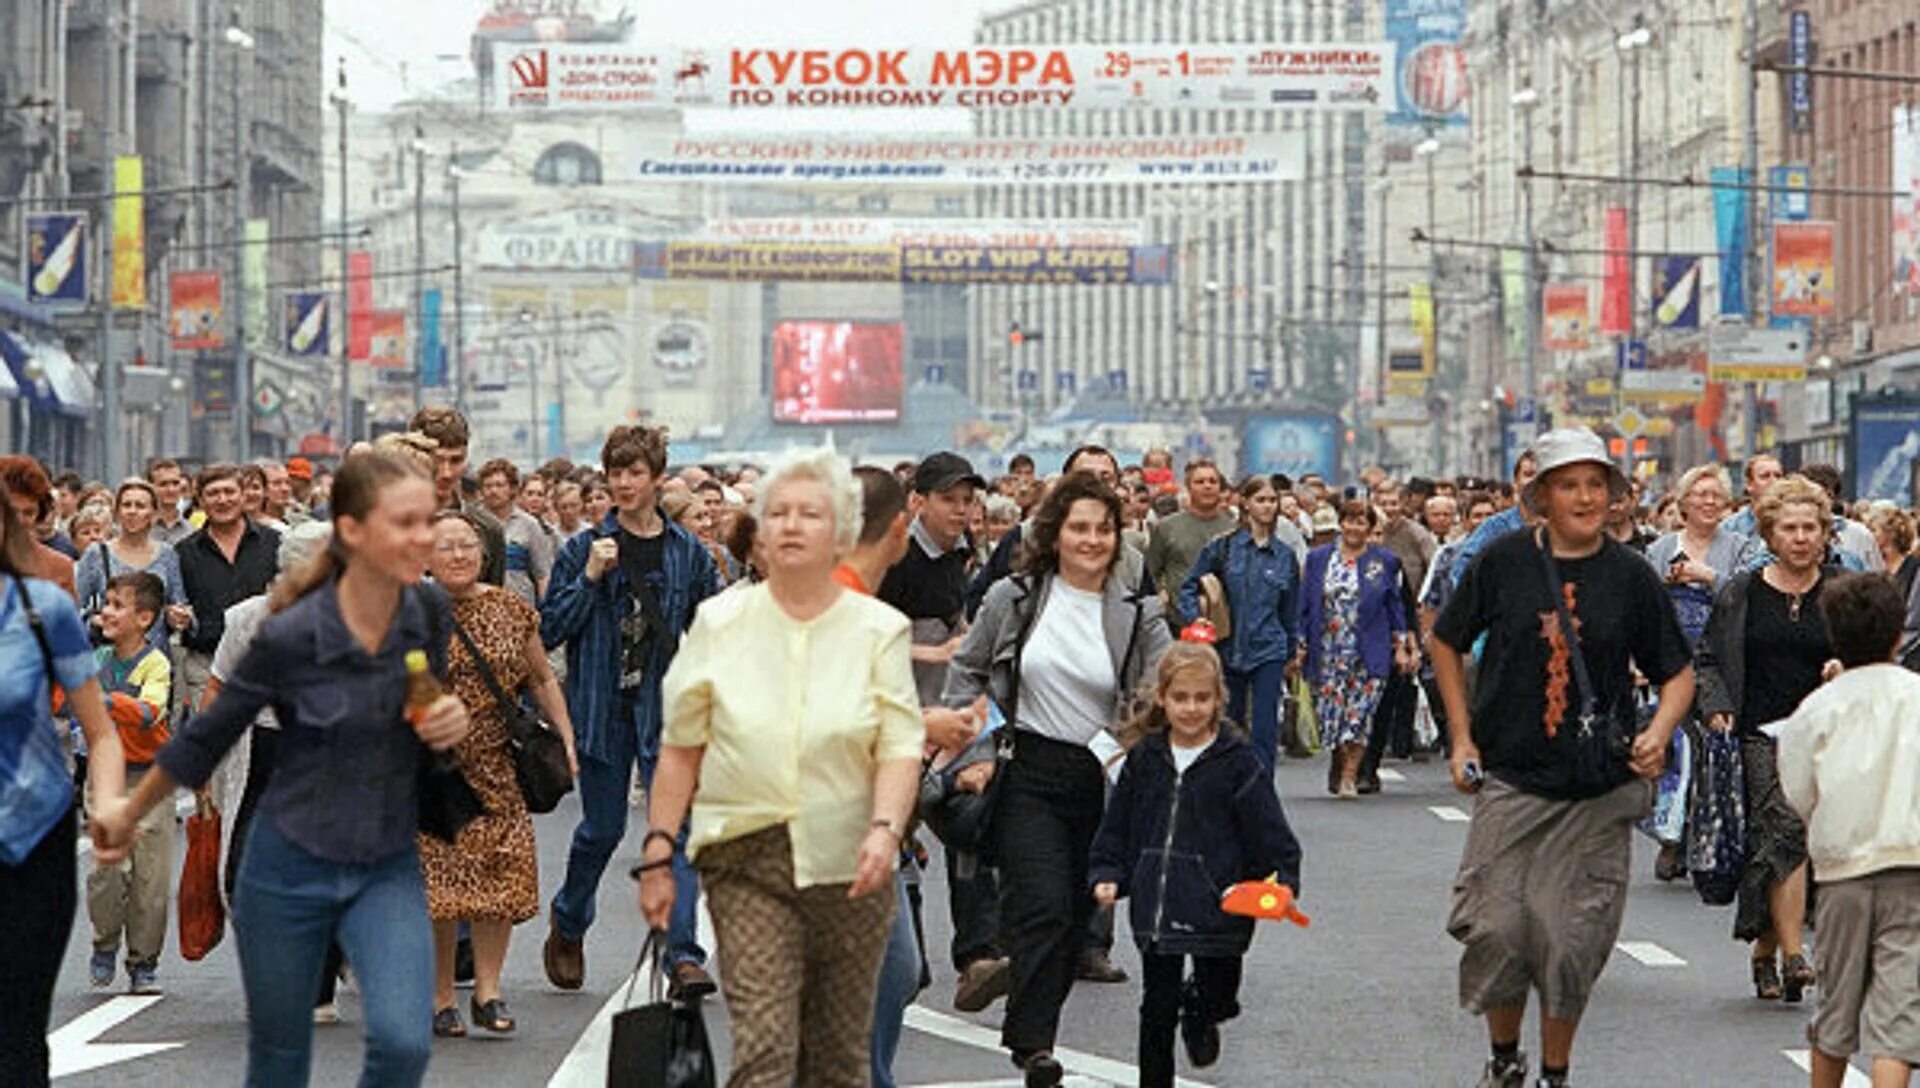 На улице было много народу. Люди на улице. Толпа людей в Москве. Люди на улице города. Люди в городе.